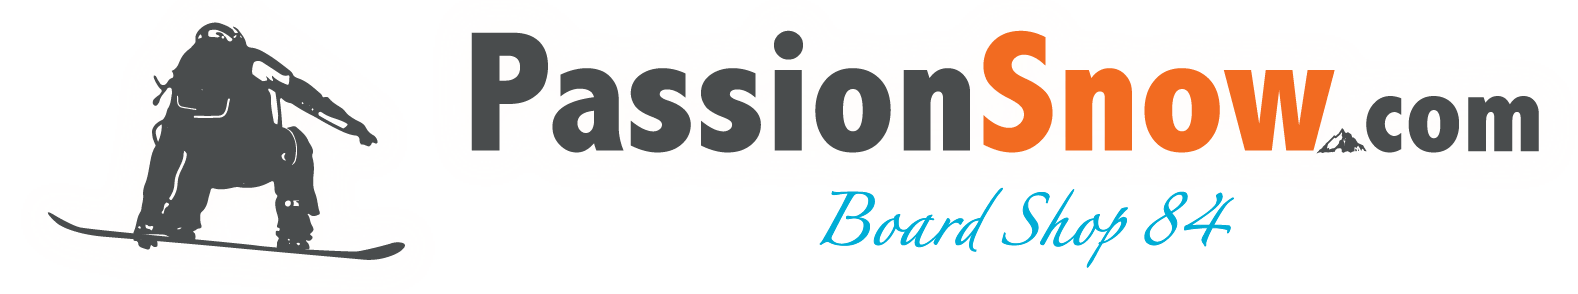 passionsnow.com